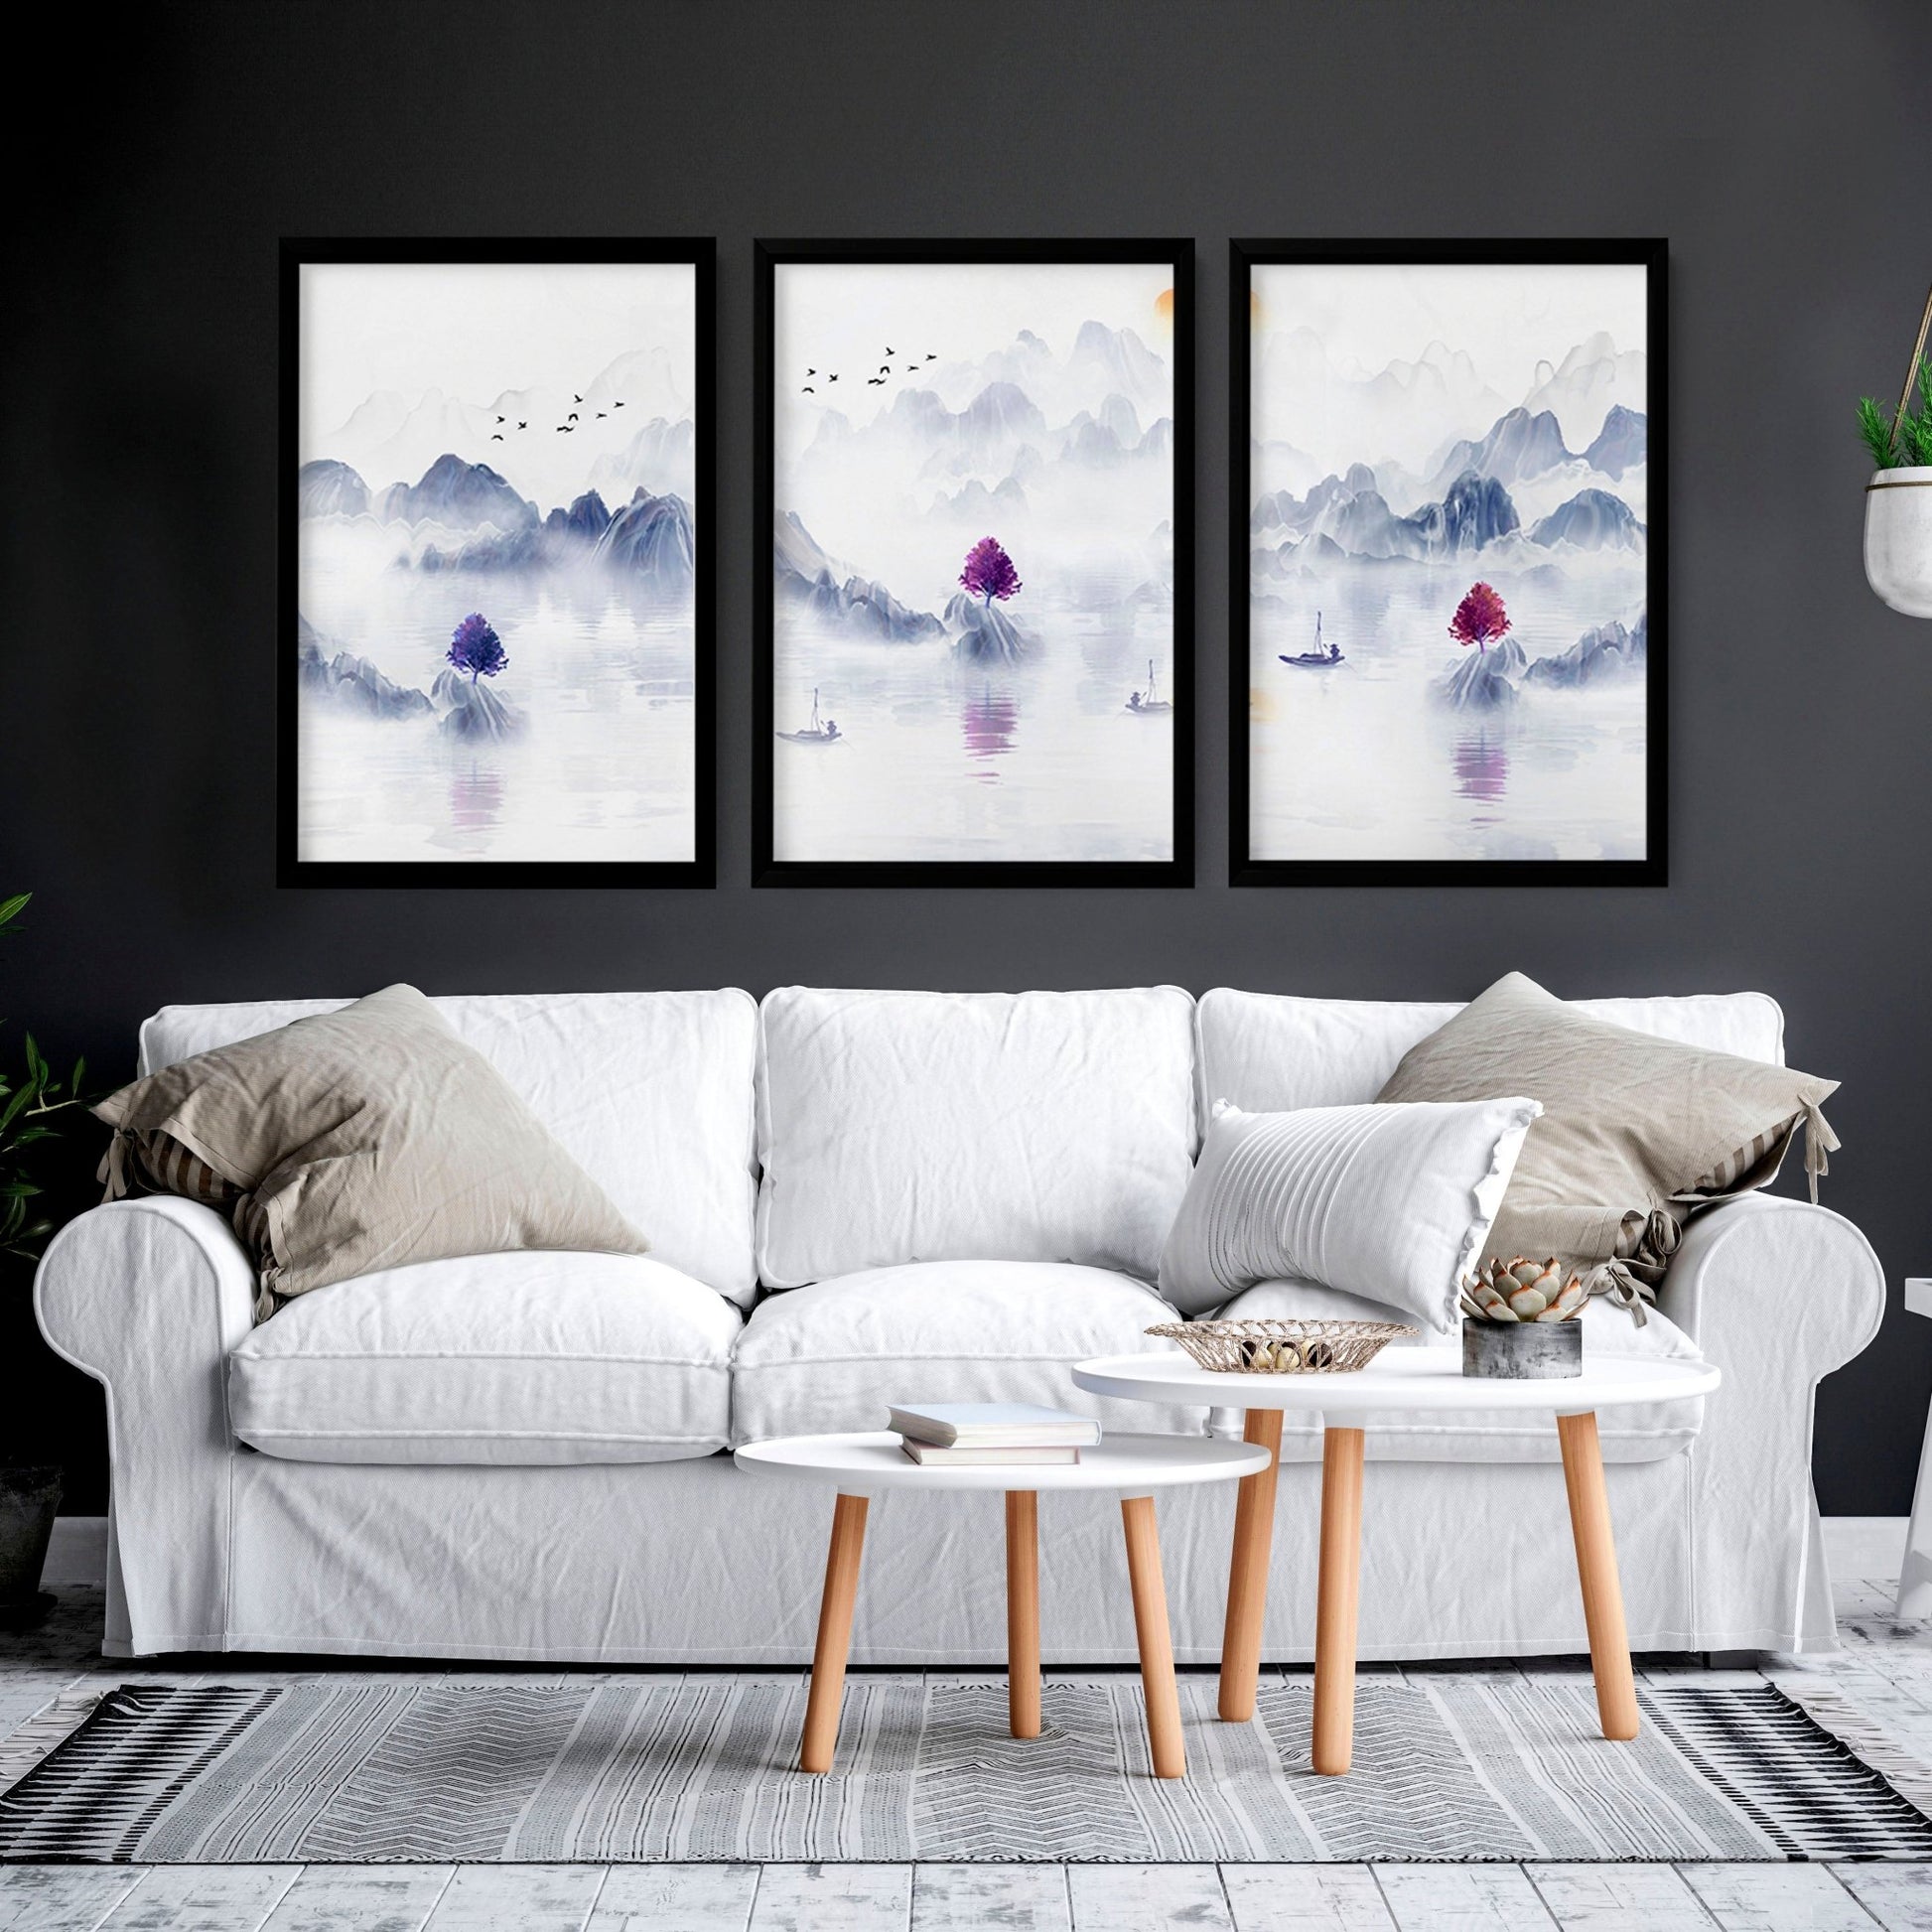 Japanese zen home decor | set of 3 wall art prints - About Wall Art